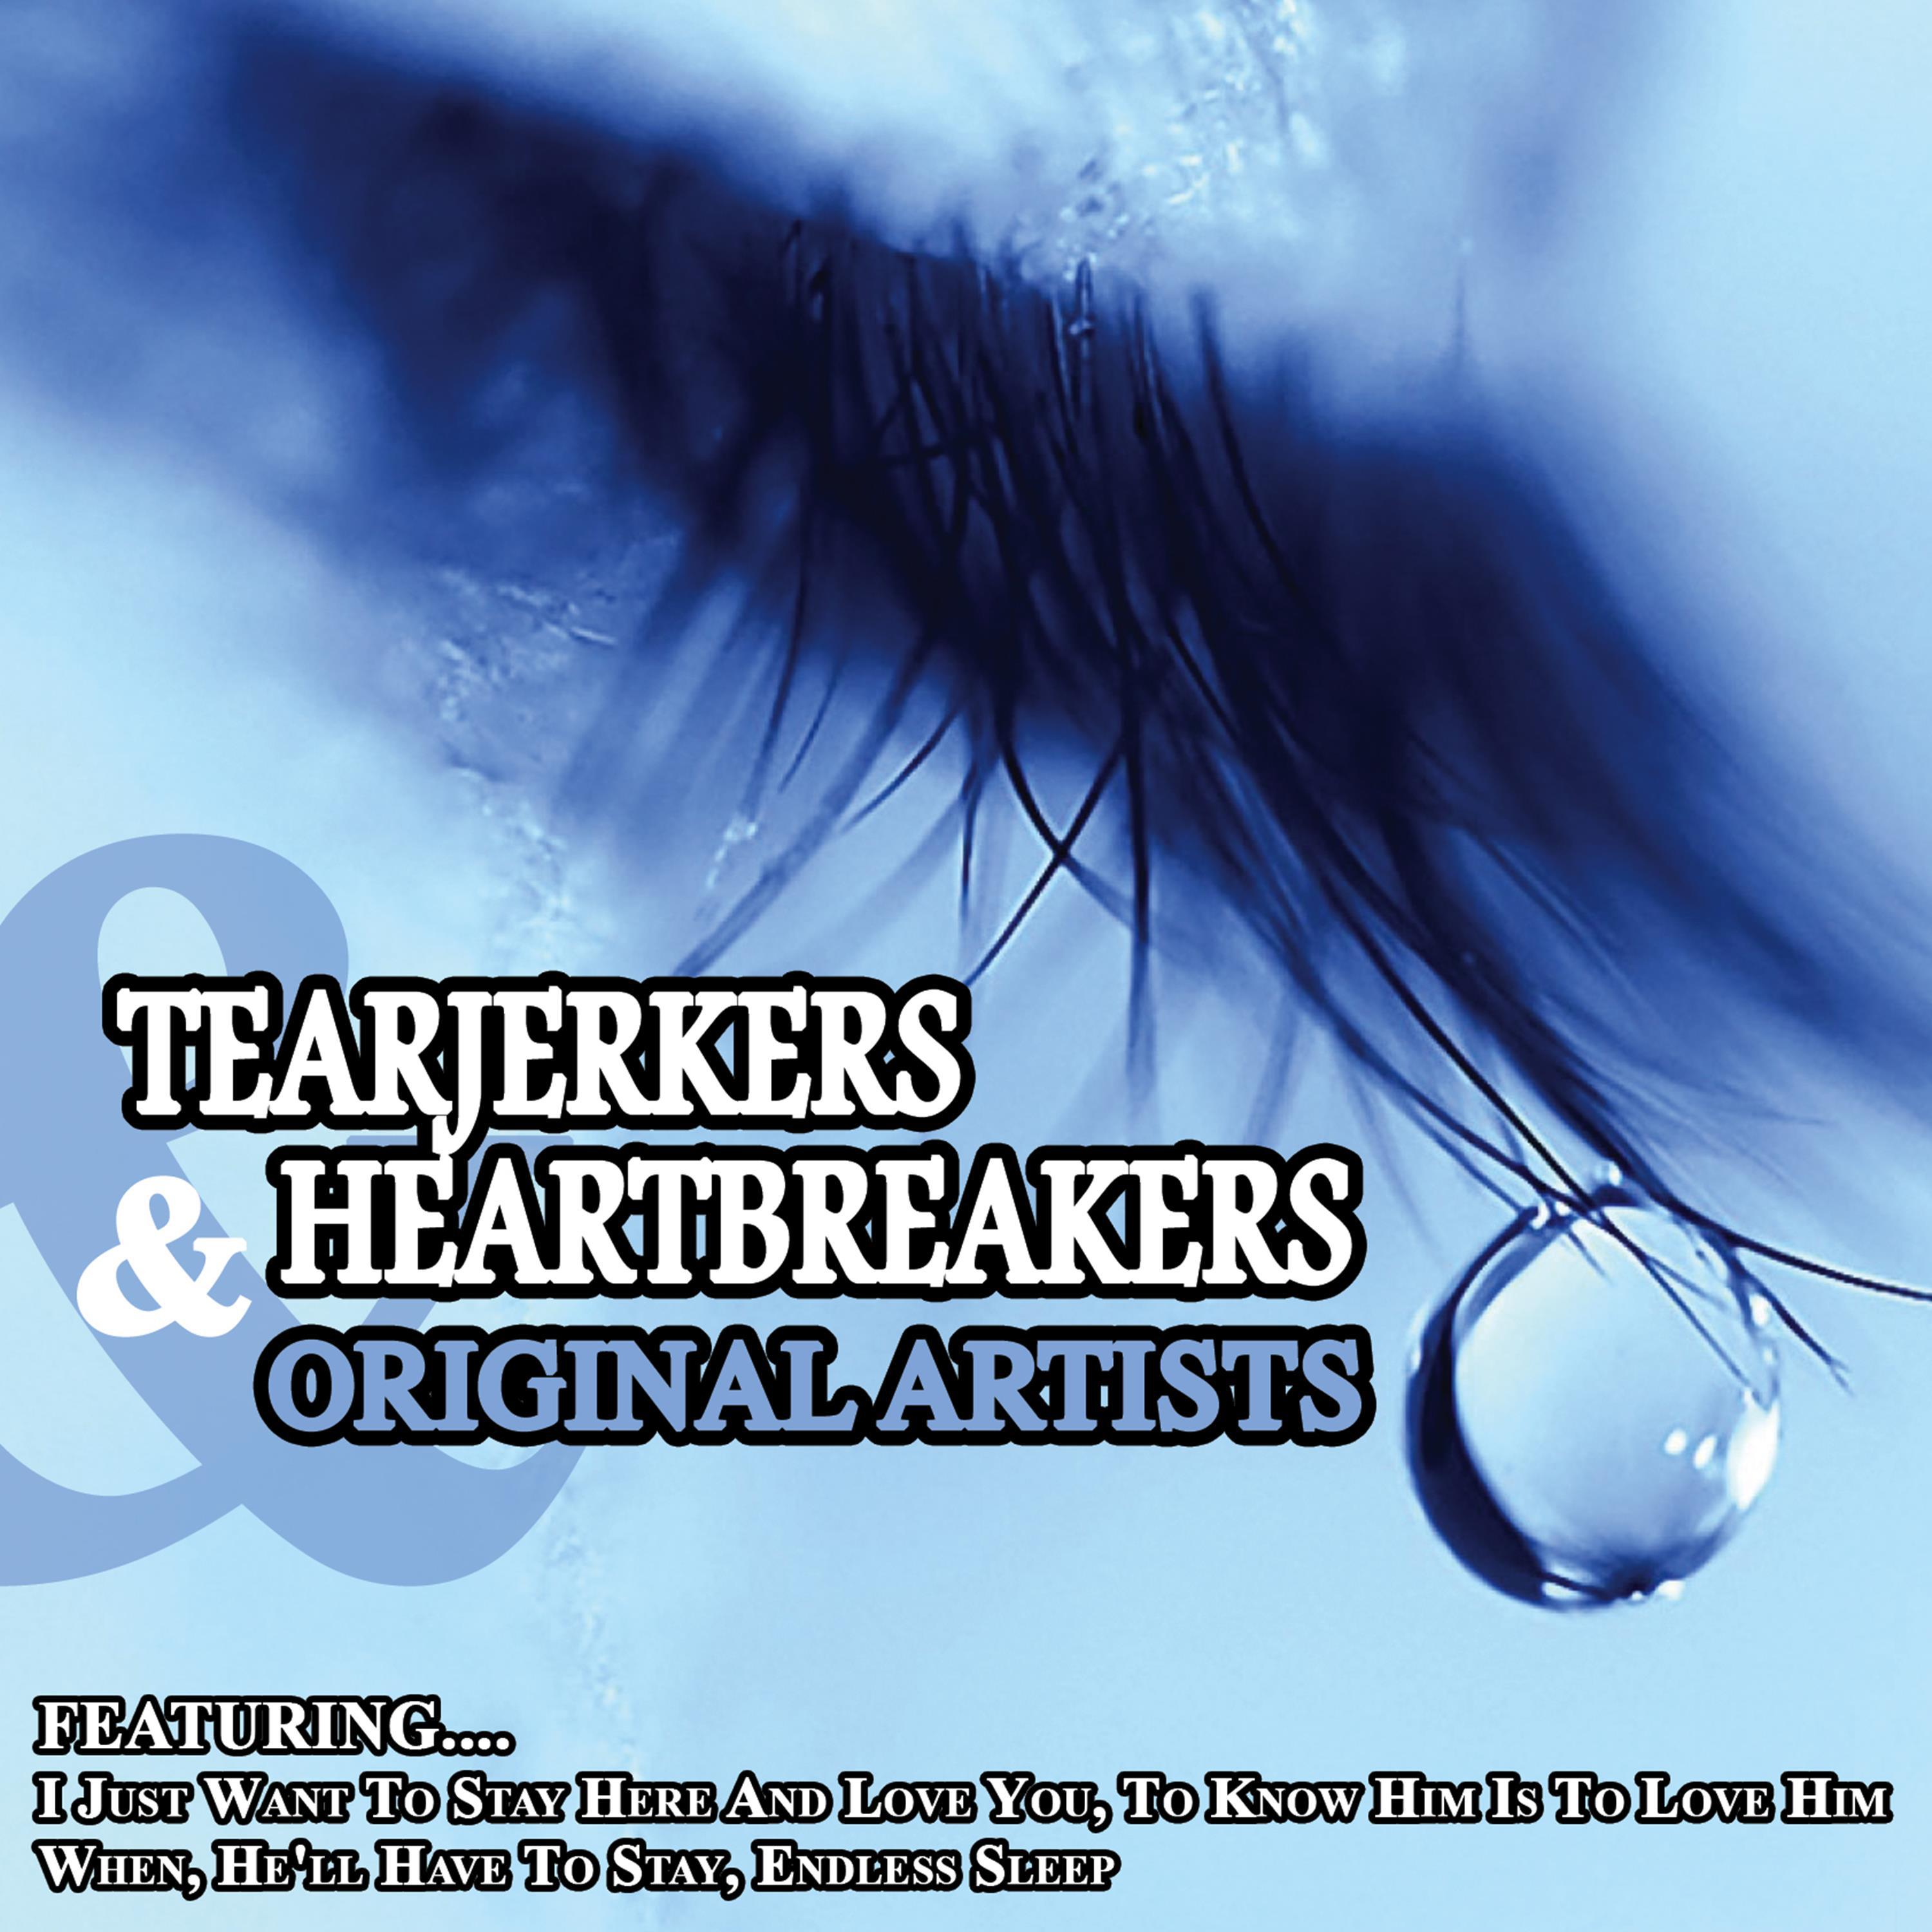 Tearjerkers and Heartbreakers